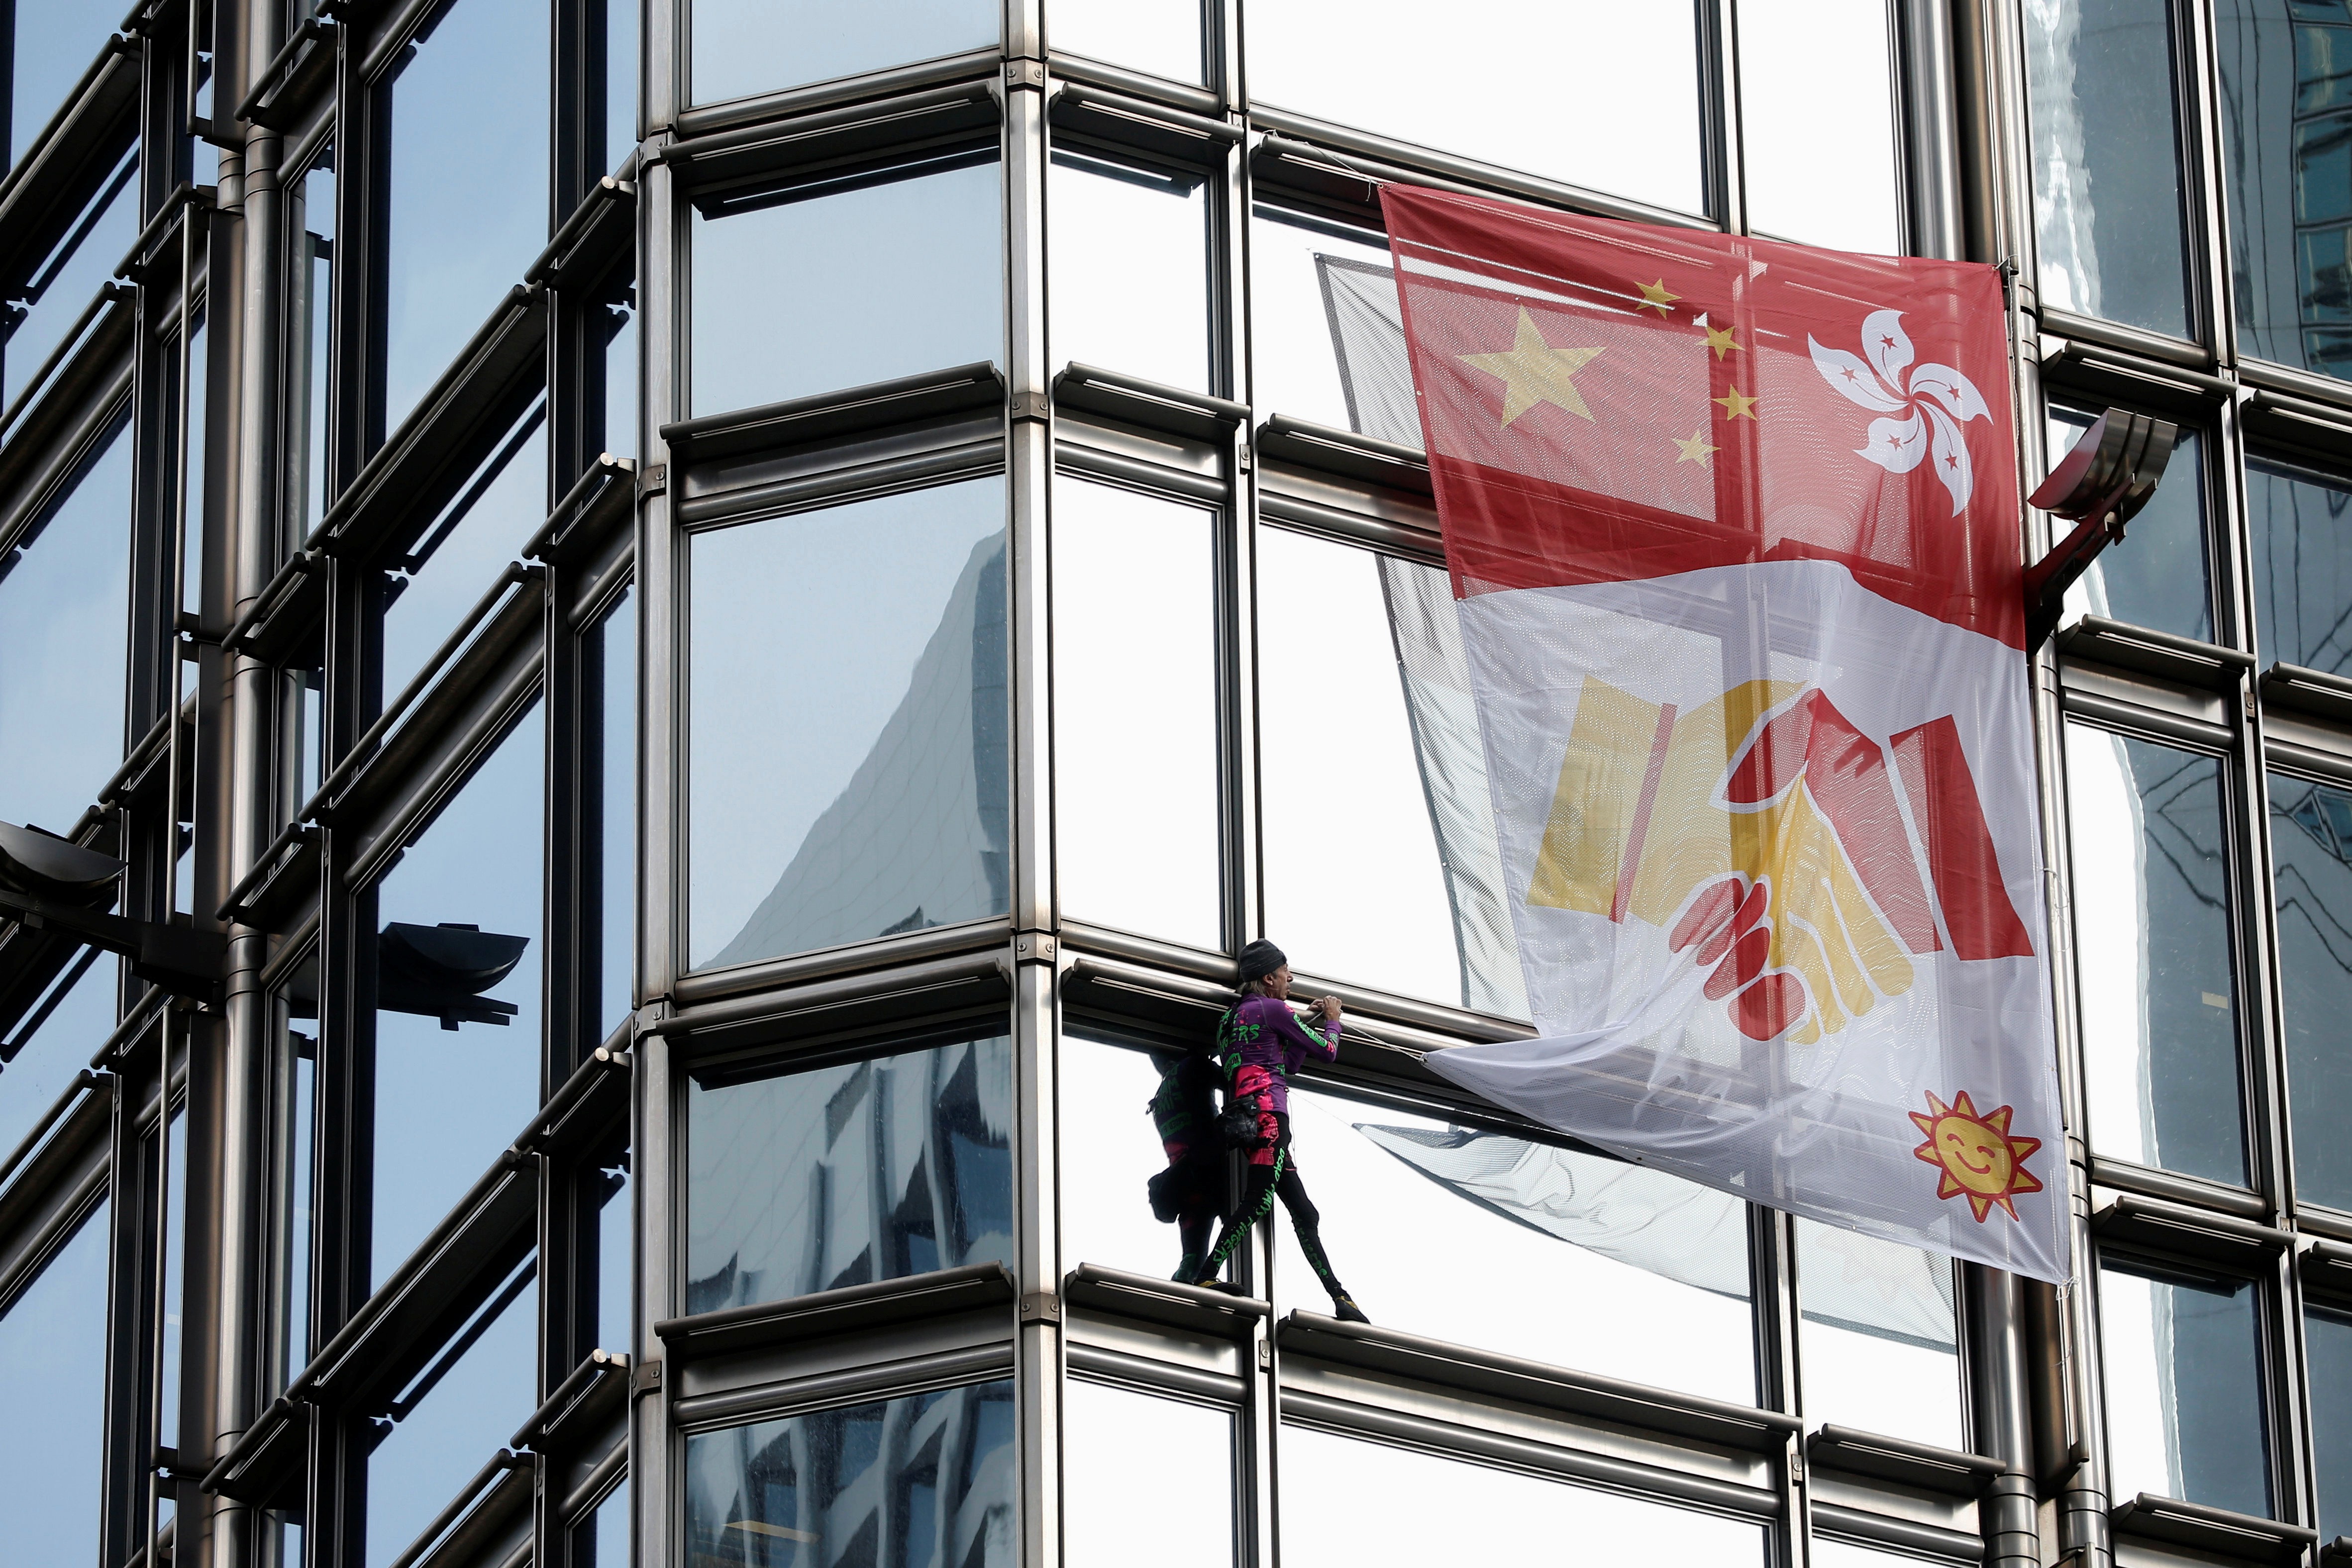 French Spider-Man Alain Robert hangs handshake banner from Hong Kong  skyscraper owned by Li Ka-shing | South China Morning Post